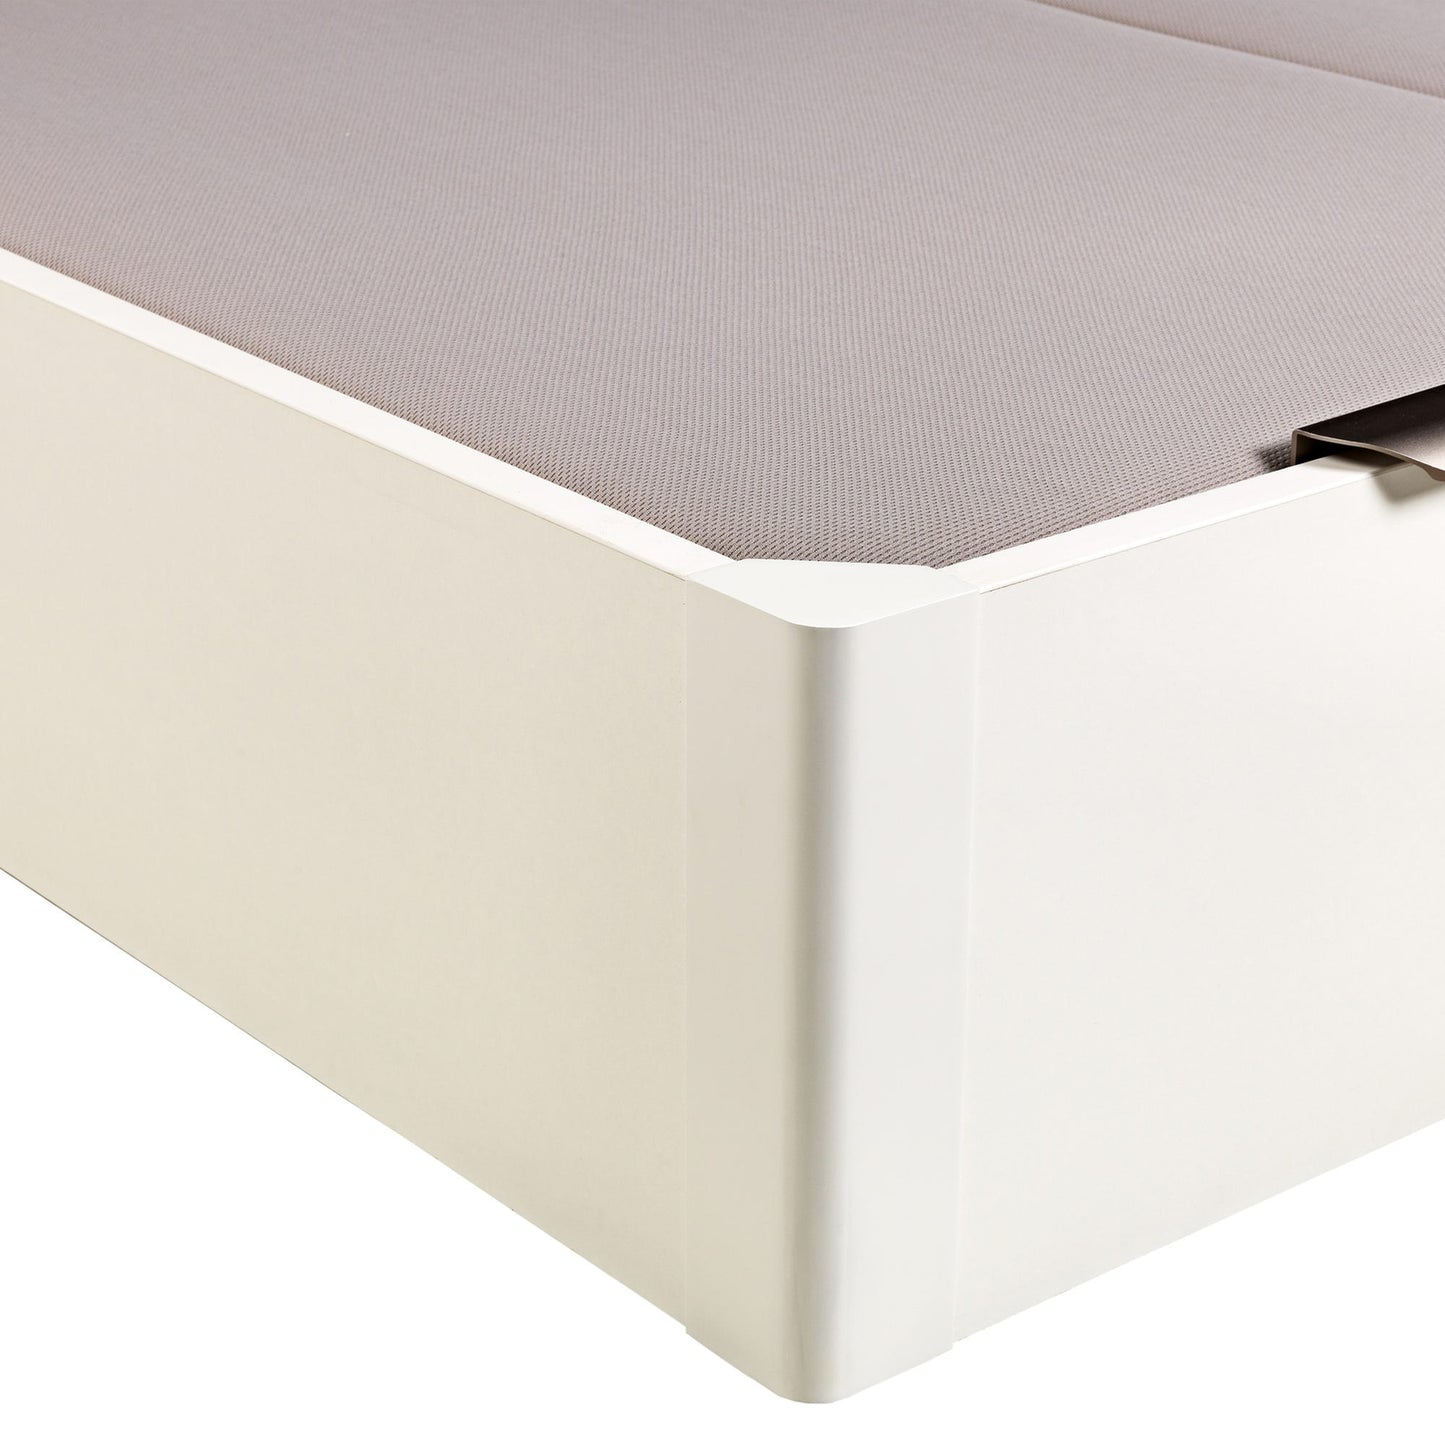 Canapé abatible de madera de tapa doble de color blanco - DESIGN - 180x200